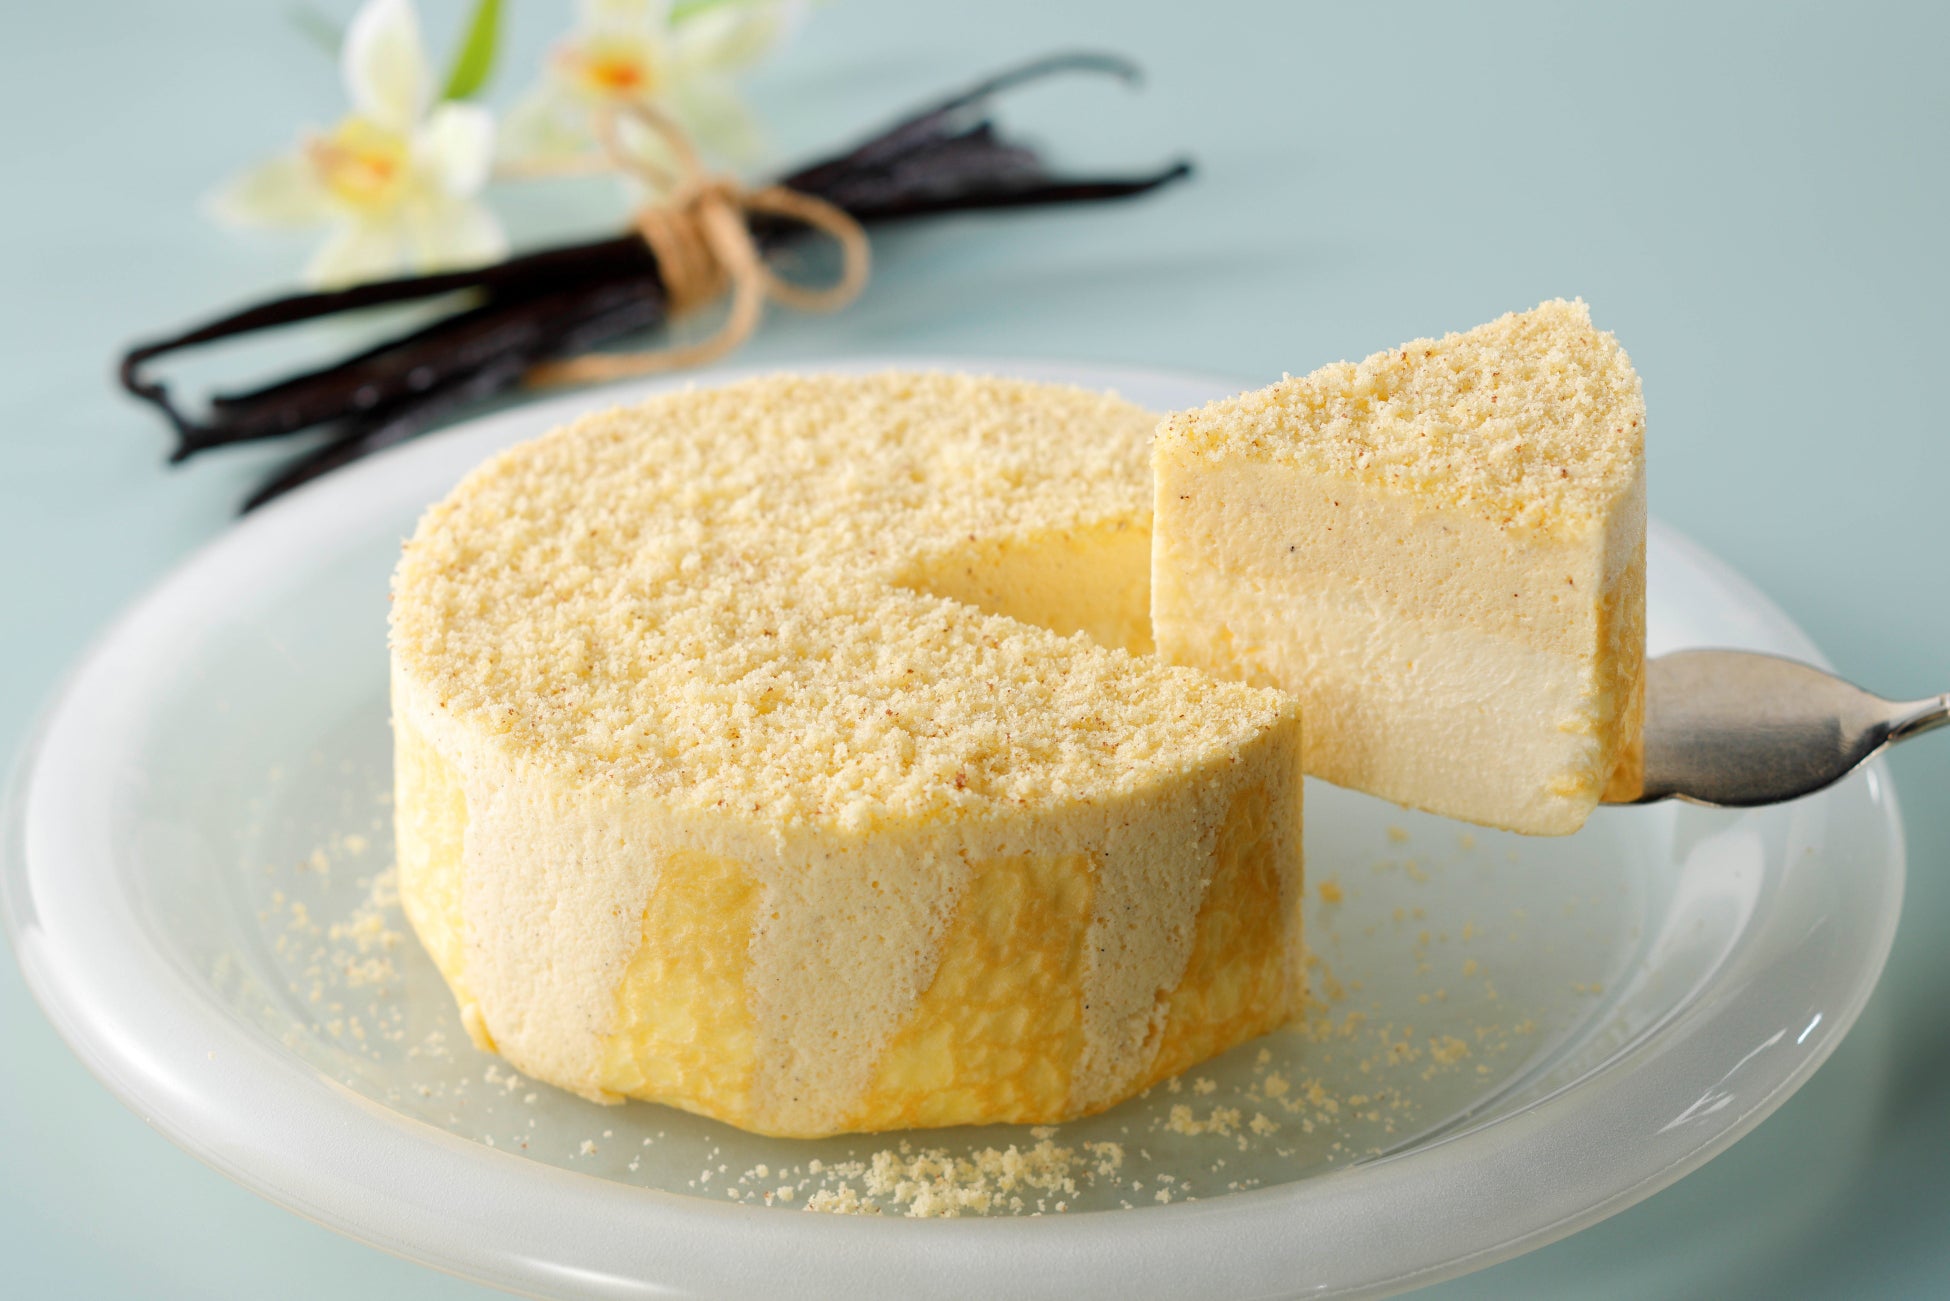 バニラの甘い香りとともに味わう、ミルクとチーズのやさしいマリアージュ。【東京ミルクチーズ工場】より「ミルクチーズケーキ バニラ」を新発売！